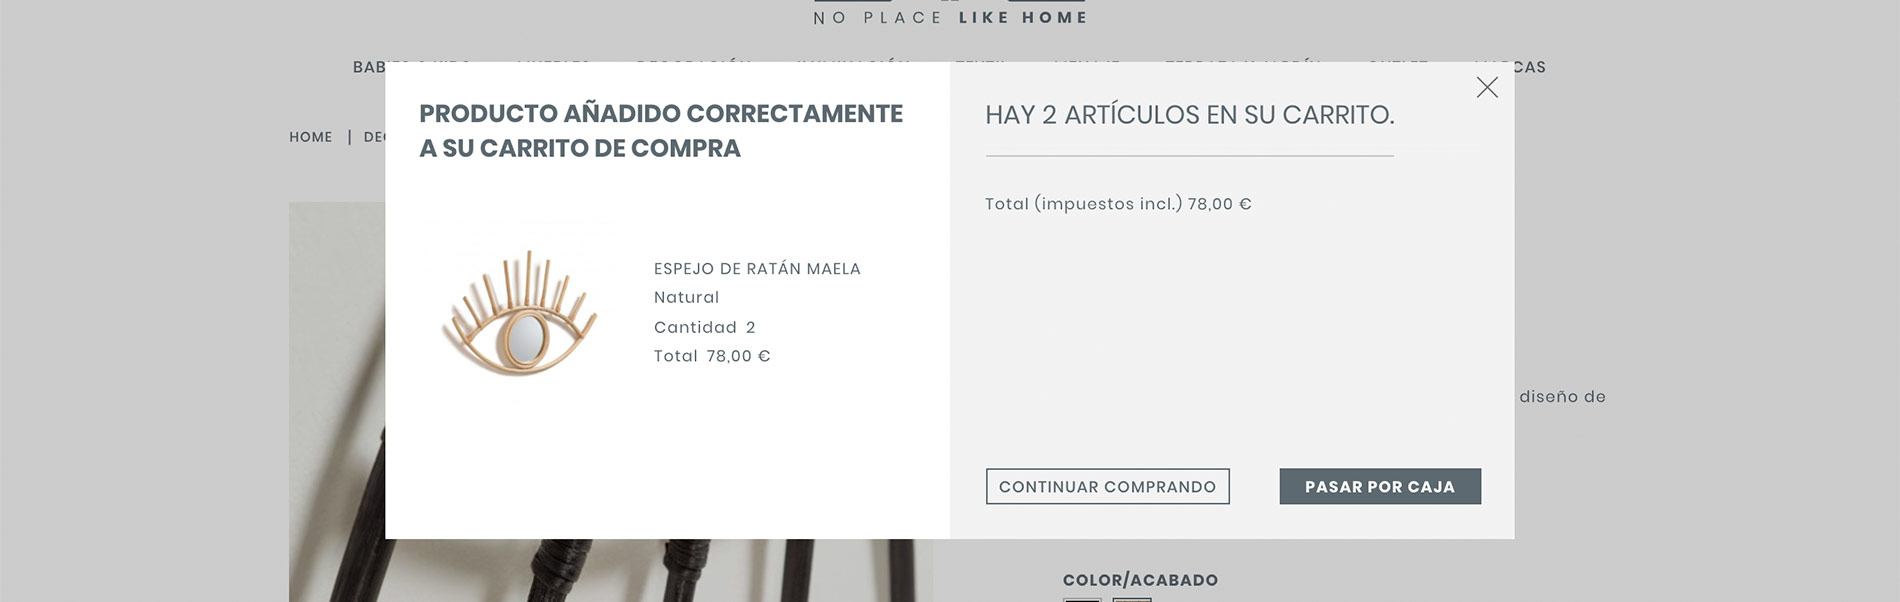 Desarrollo tienda online No Place Like Home - Madrid